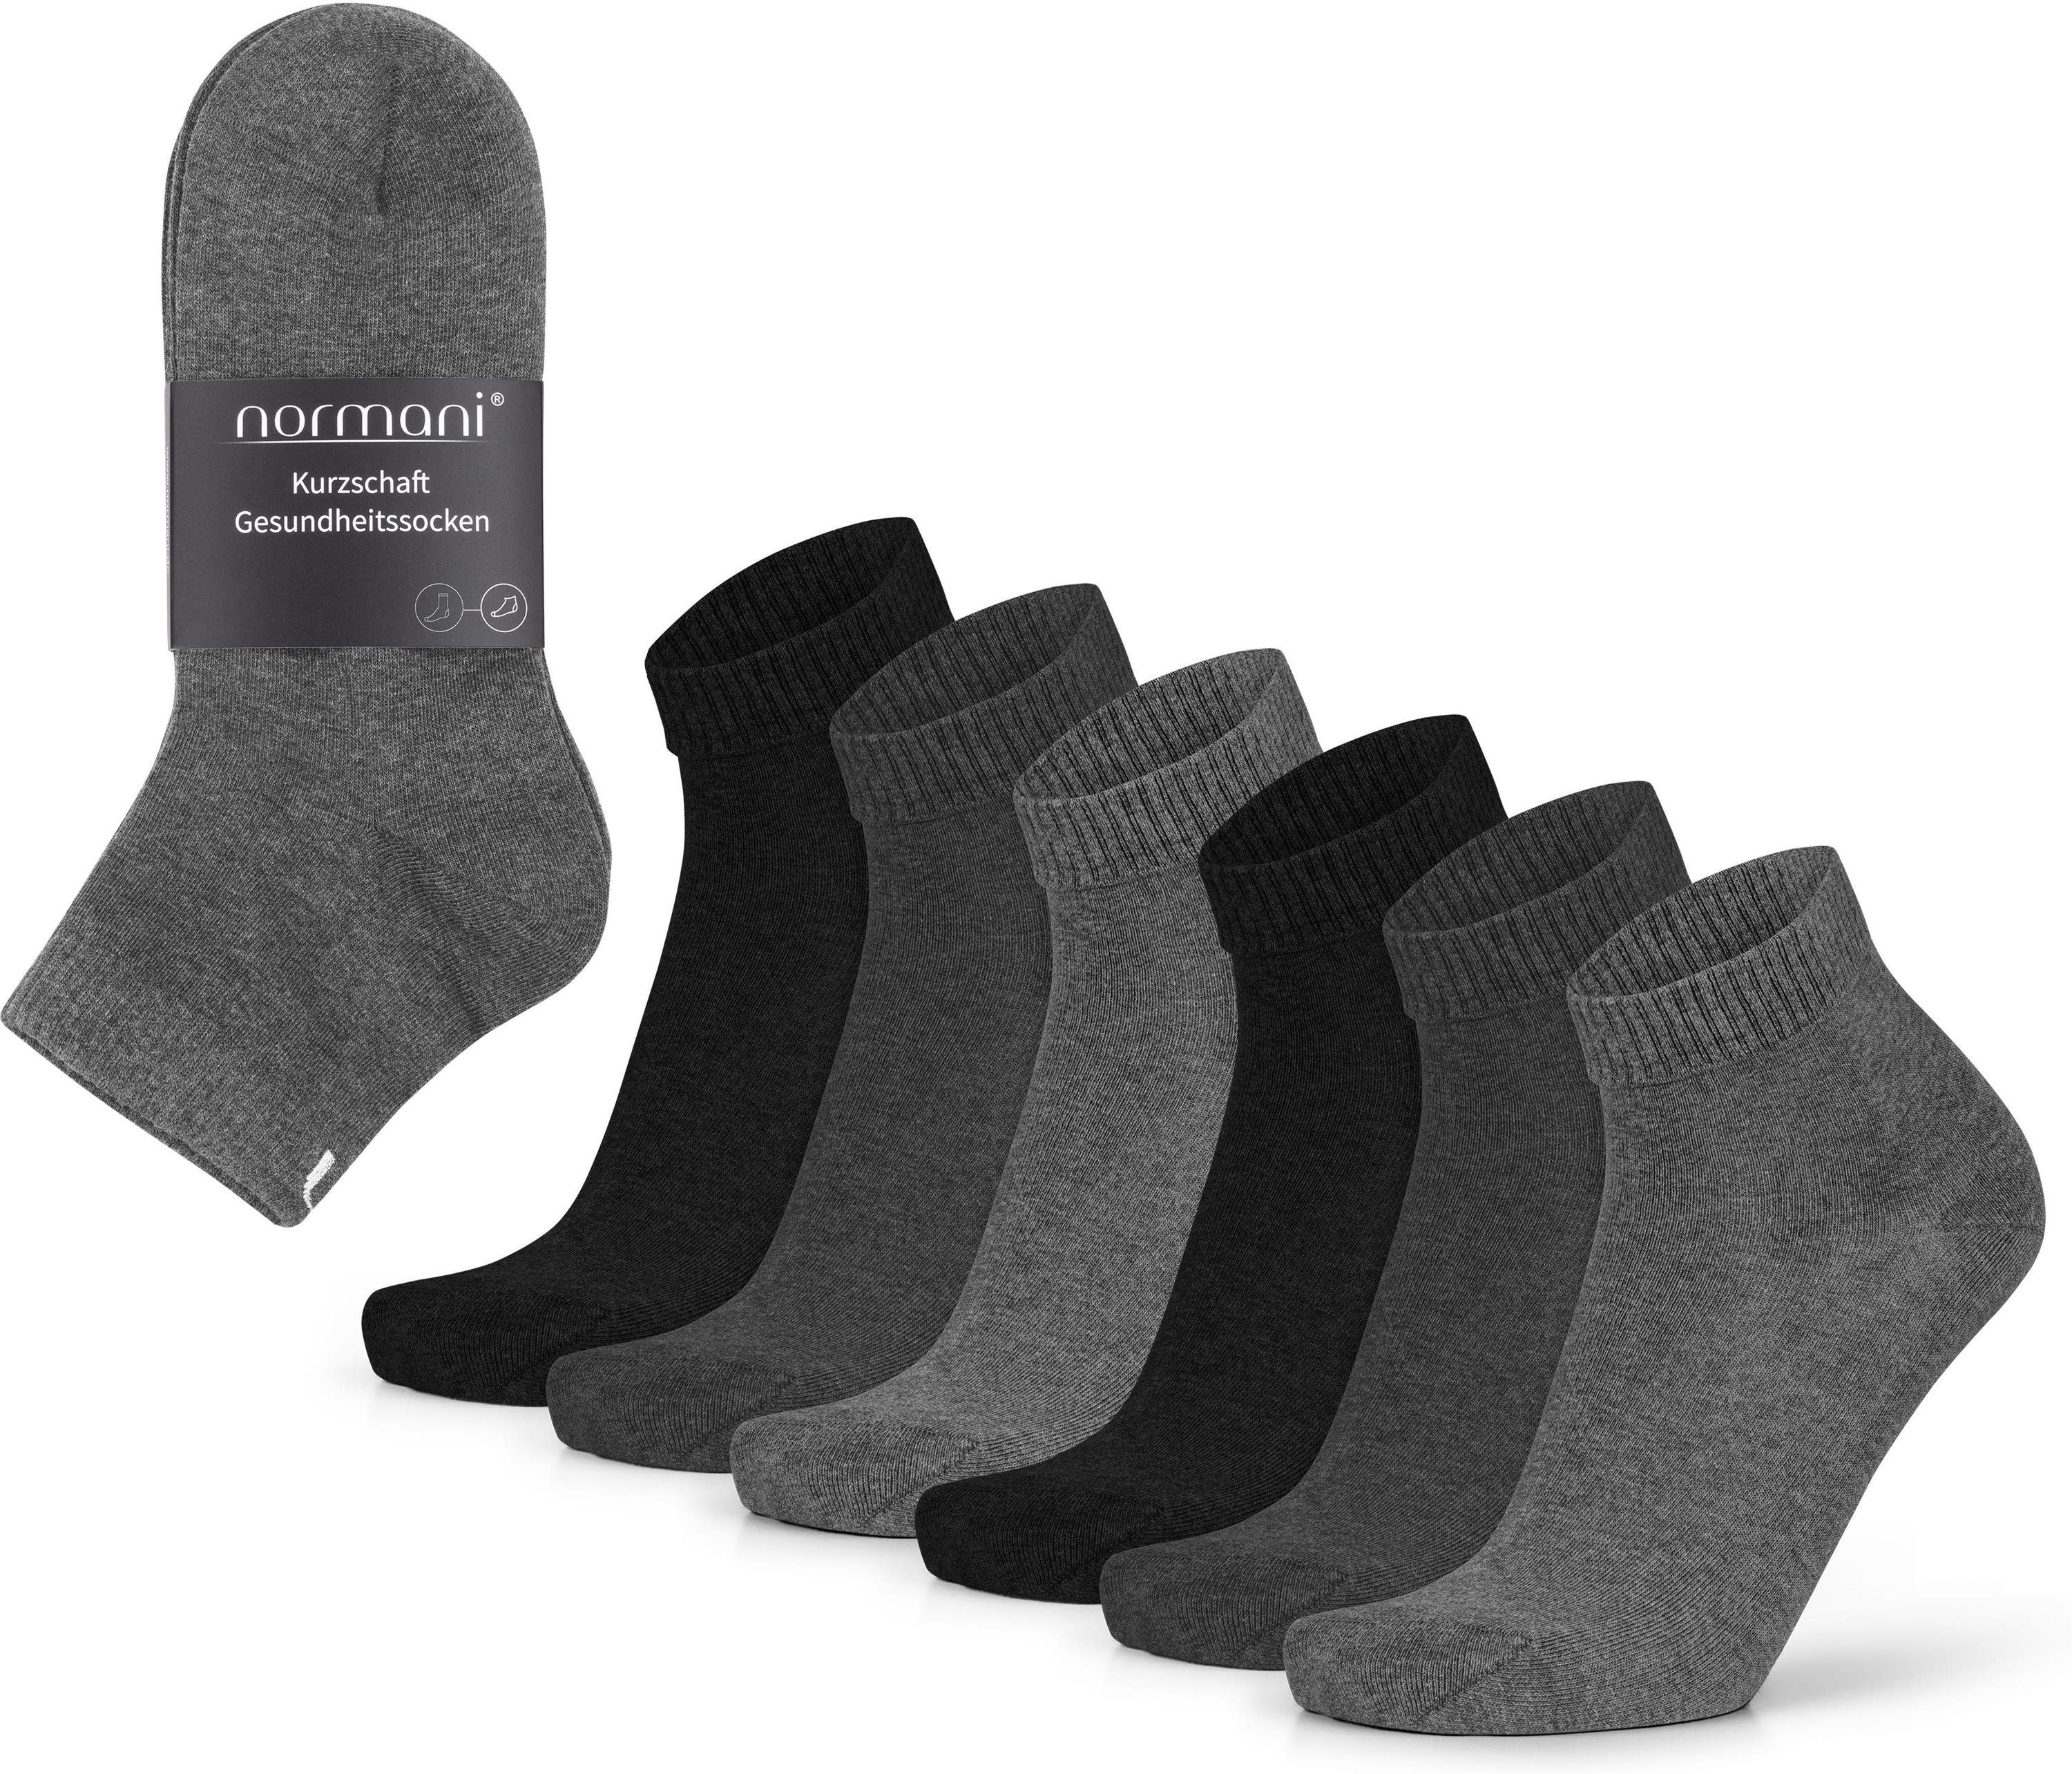 normani Sneakersocken (6 Paar) Kurzschaft Gesundheitssocken aus Baumwolle. Grau/Anthrazit/Schwarz